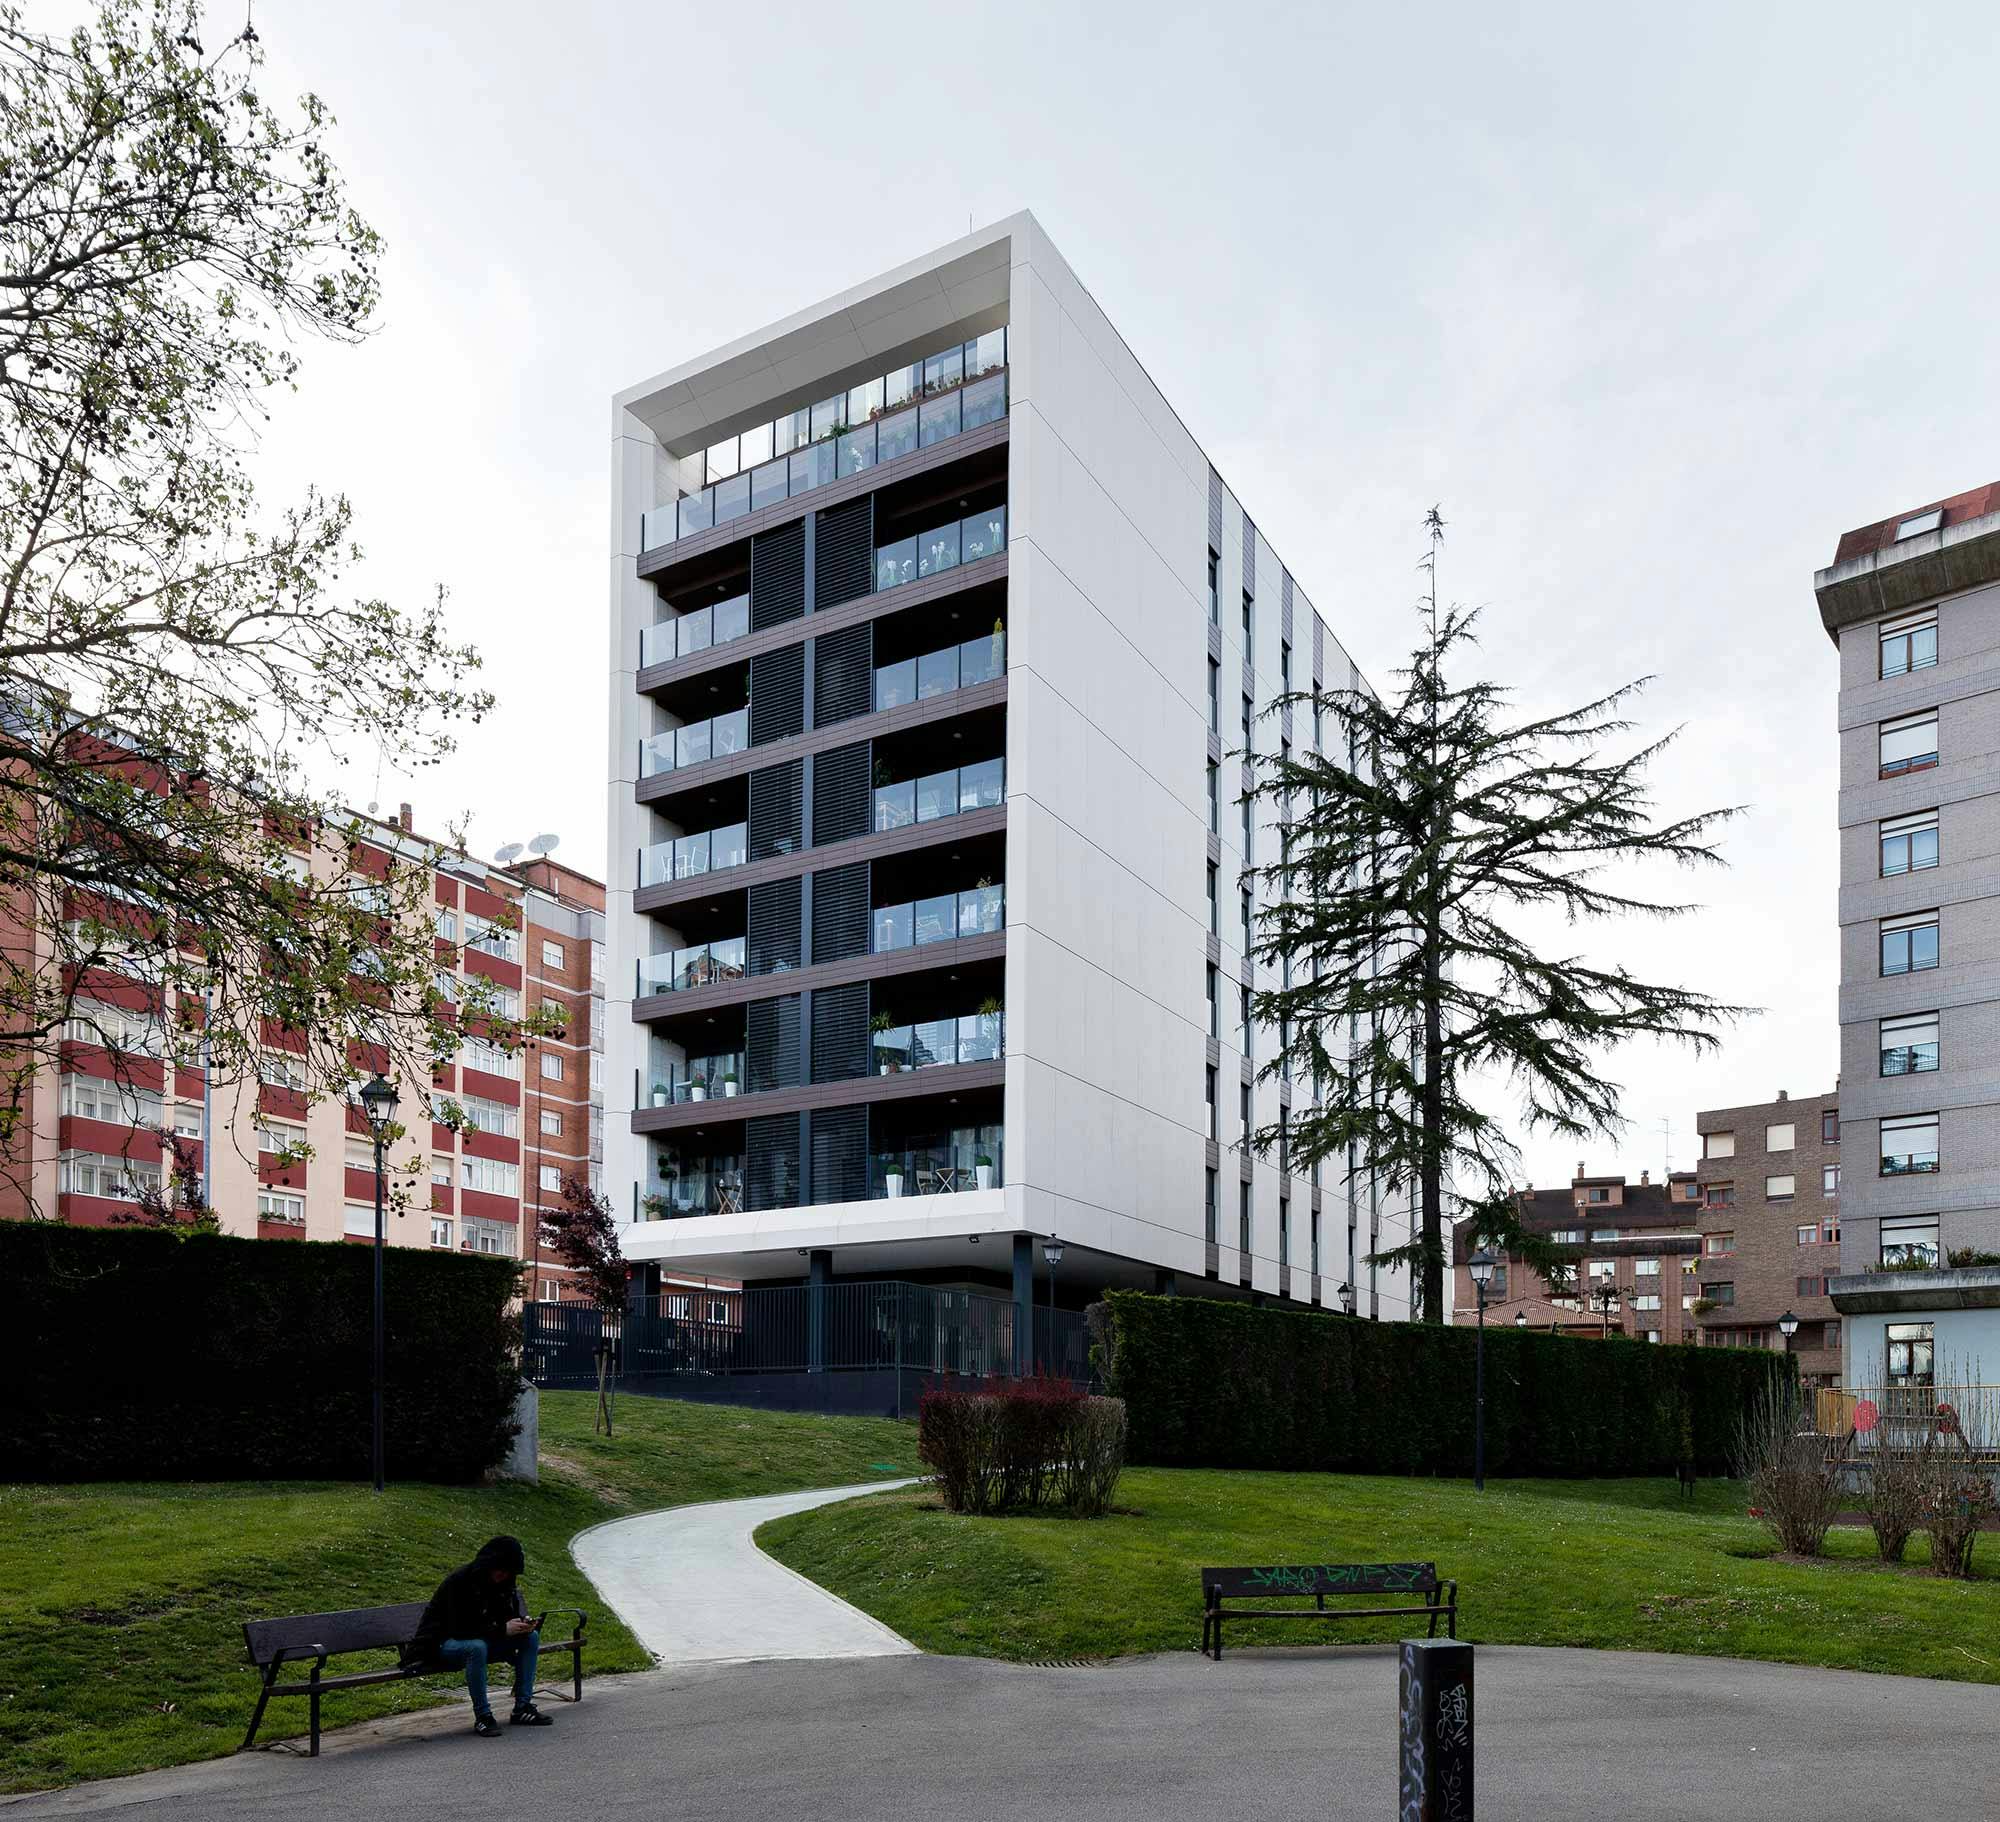 Image of Edificio viviendas oviedo sanatorio blanco 6.jpg?auto=format%2Ccompress&ixlib=php 3.3 in The Pacific - Cosentino